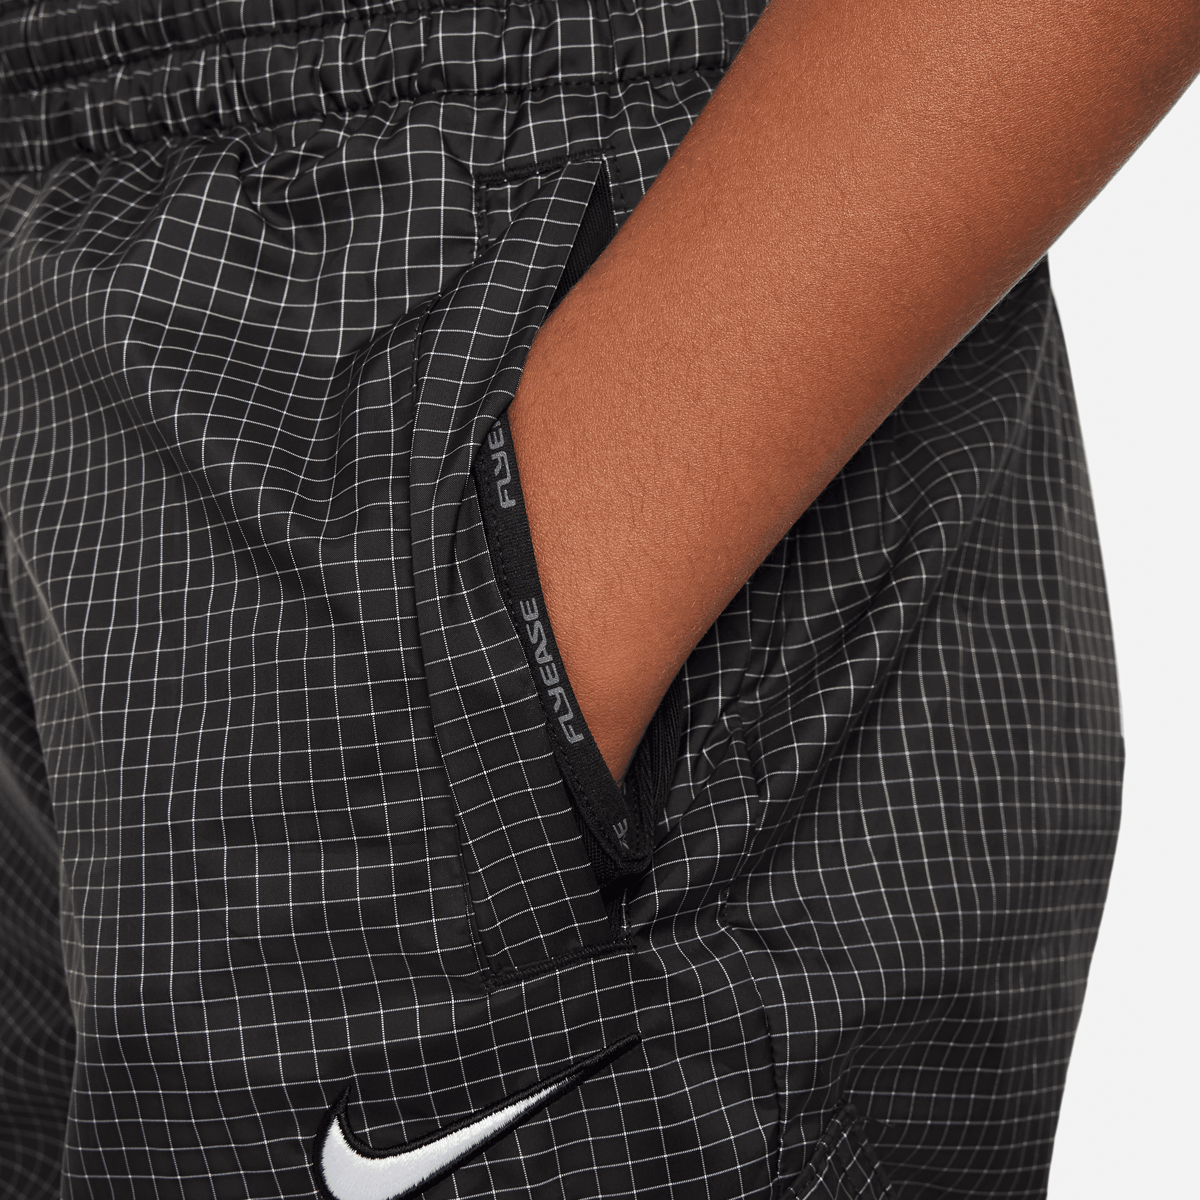 Nike Outdoor Play Fleece Pant Trainingsbroeken Kids Black maat: 147 beschikbare maaten:137 147 158 170